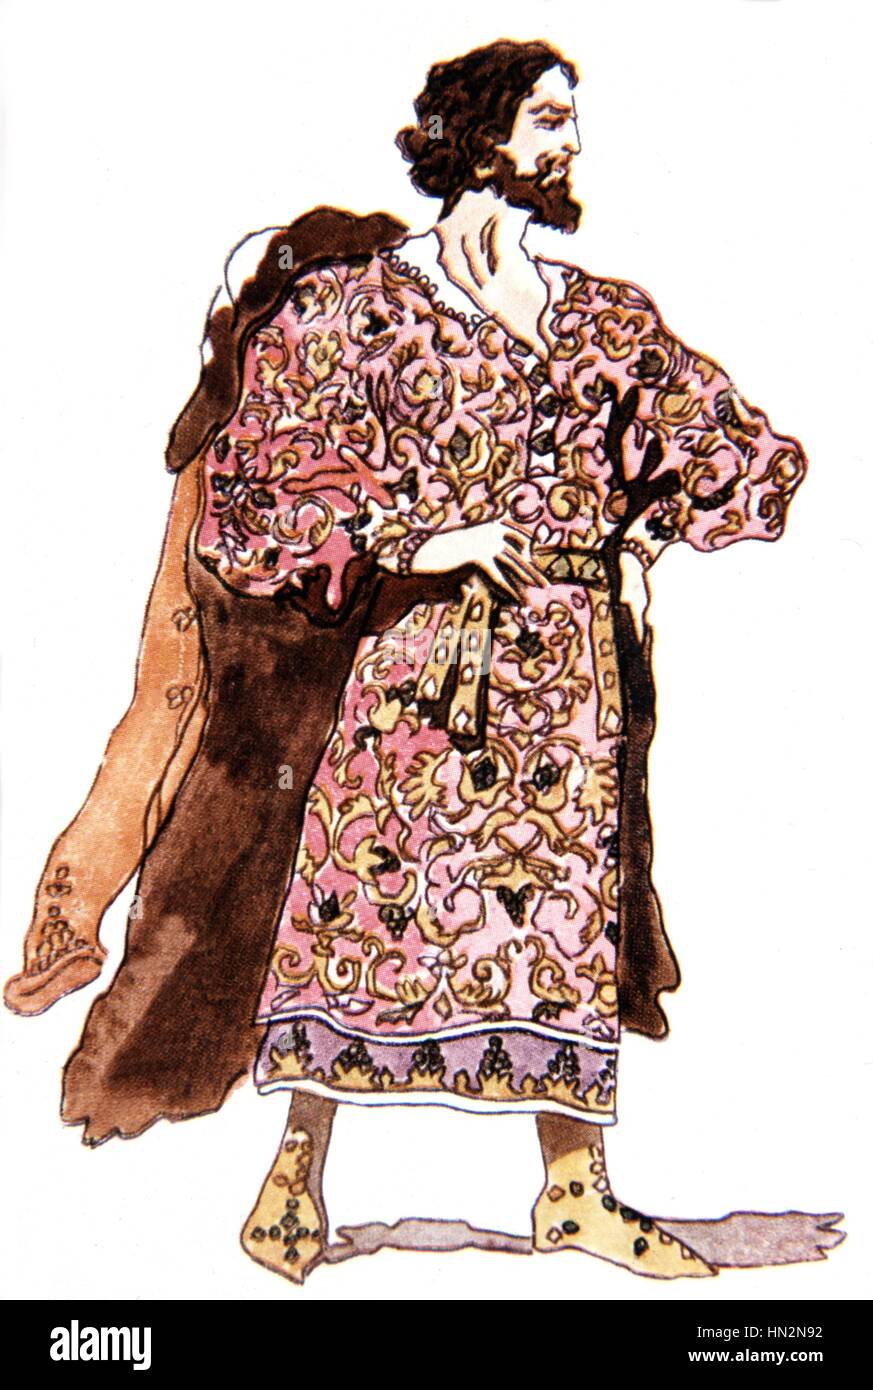 Le Prince Igor, opéra de Borodine (1833-1887). Aquarelle de Korovine : Khan le costume Kotchak ballets russes 1929 Collection privée Banque D'Images